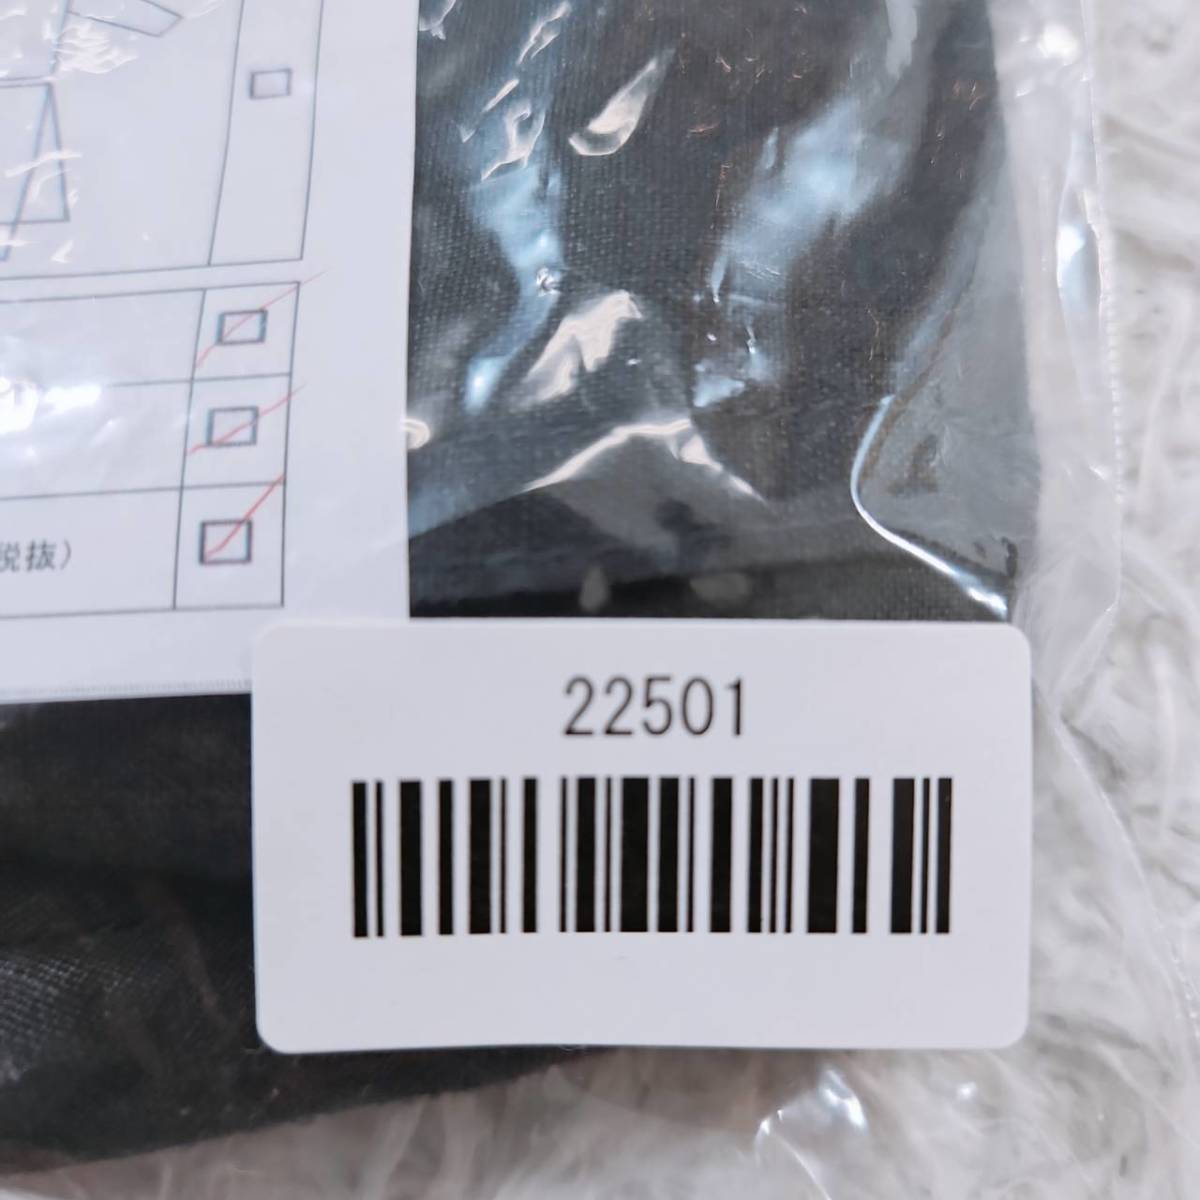 【22501】IENA イエナ ショートパンツ ショーパン 黒 ブラック ブランドサイズ36 M サイズ レディース ボタン 薄い かわいい 無地